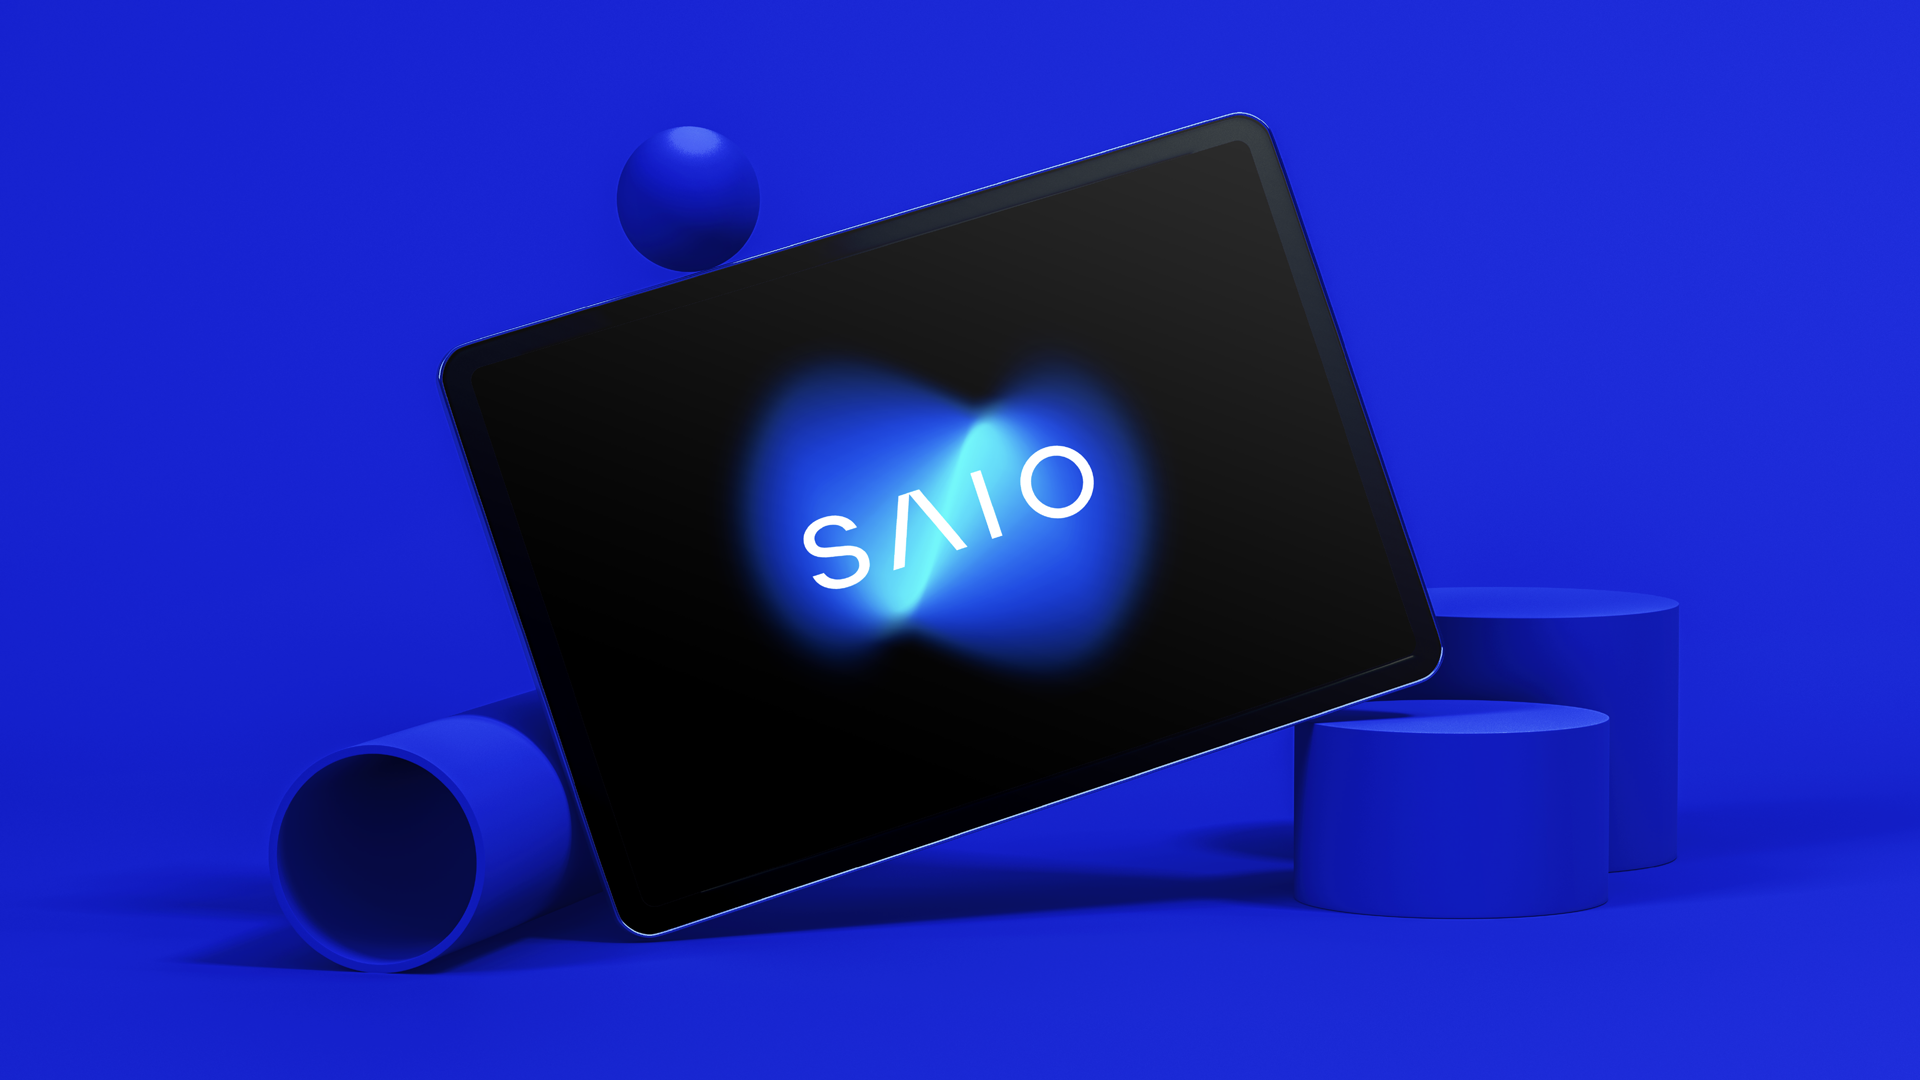 SAIO / branding